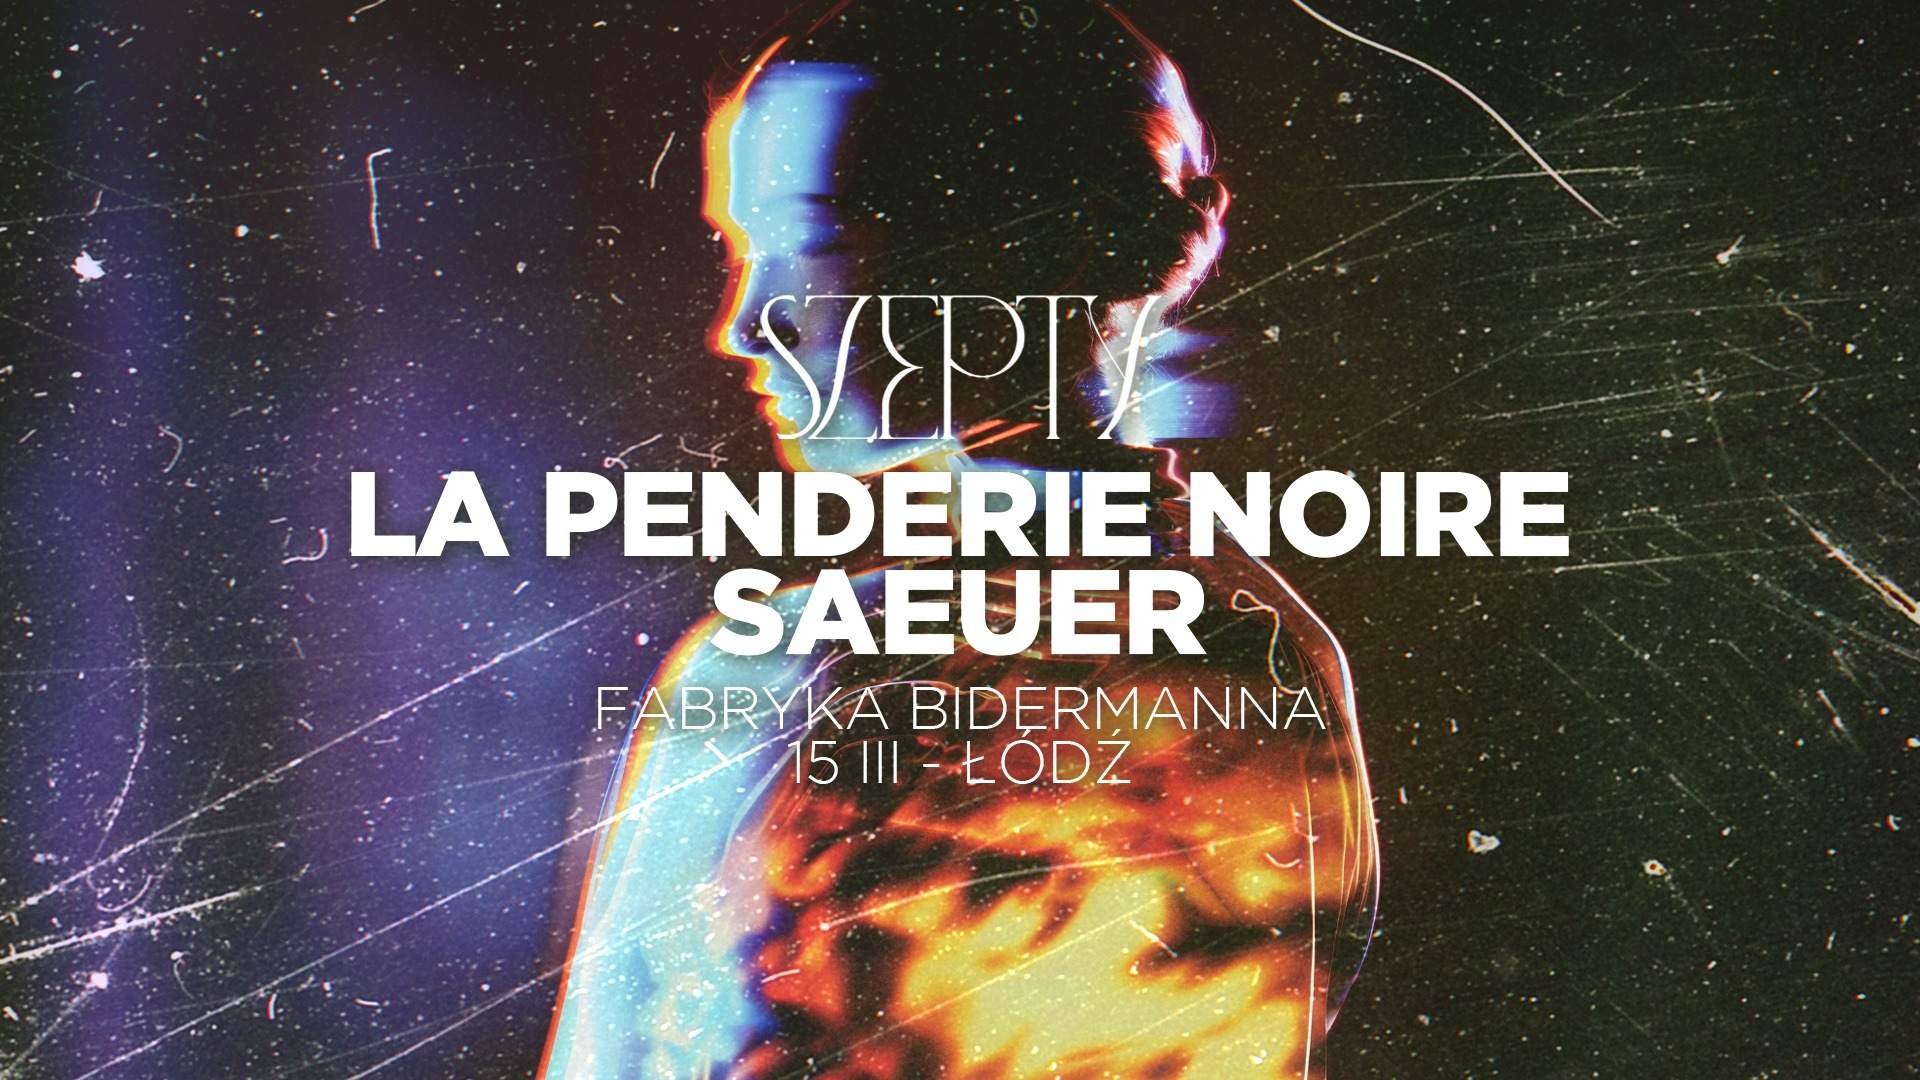 Szepty: La Penderie Noire, saeuer - フライヤー表